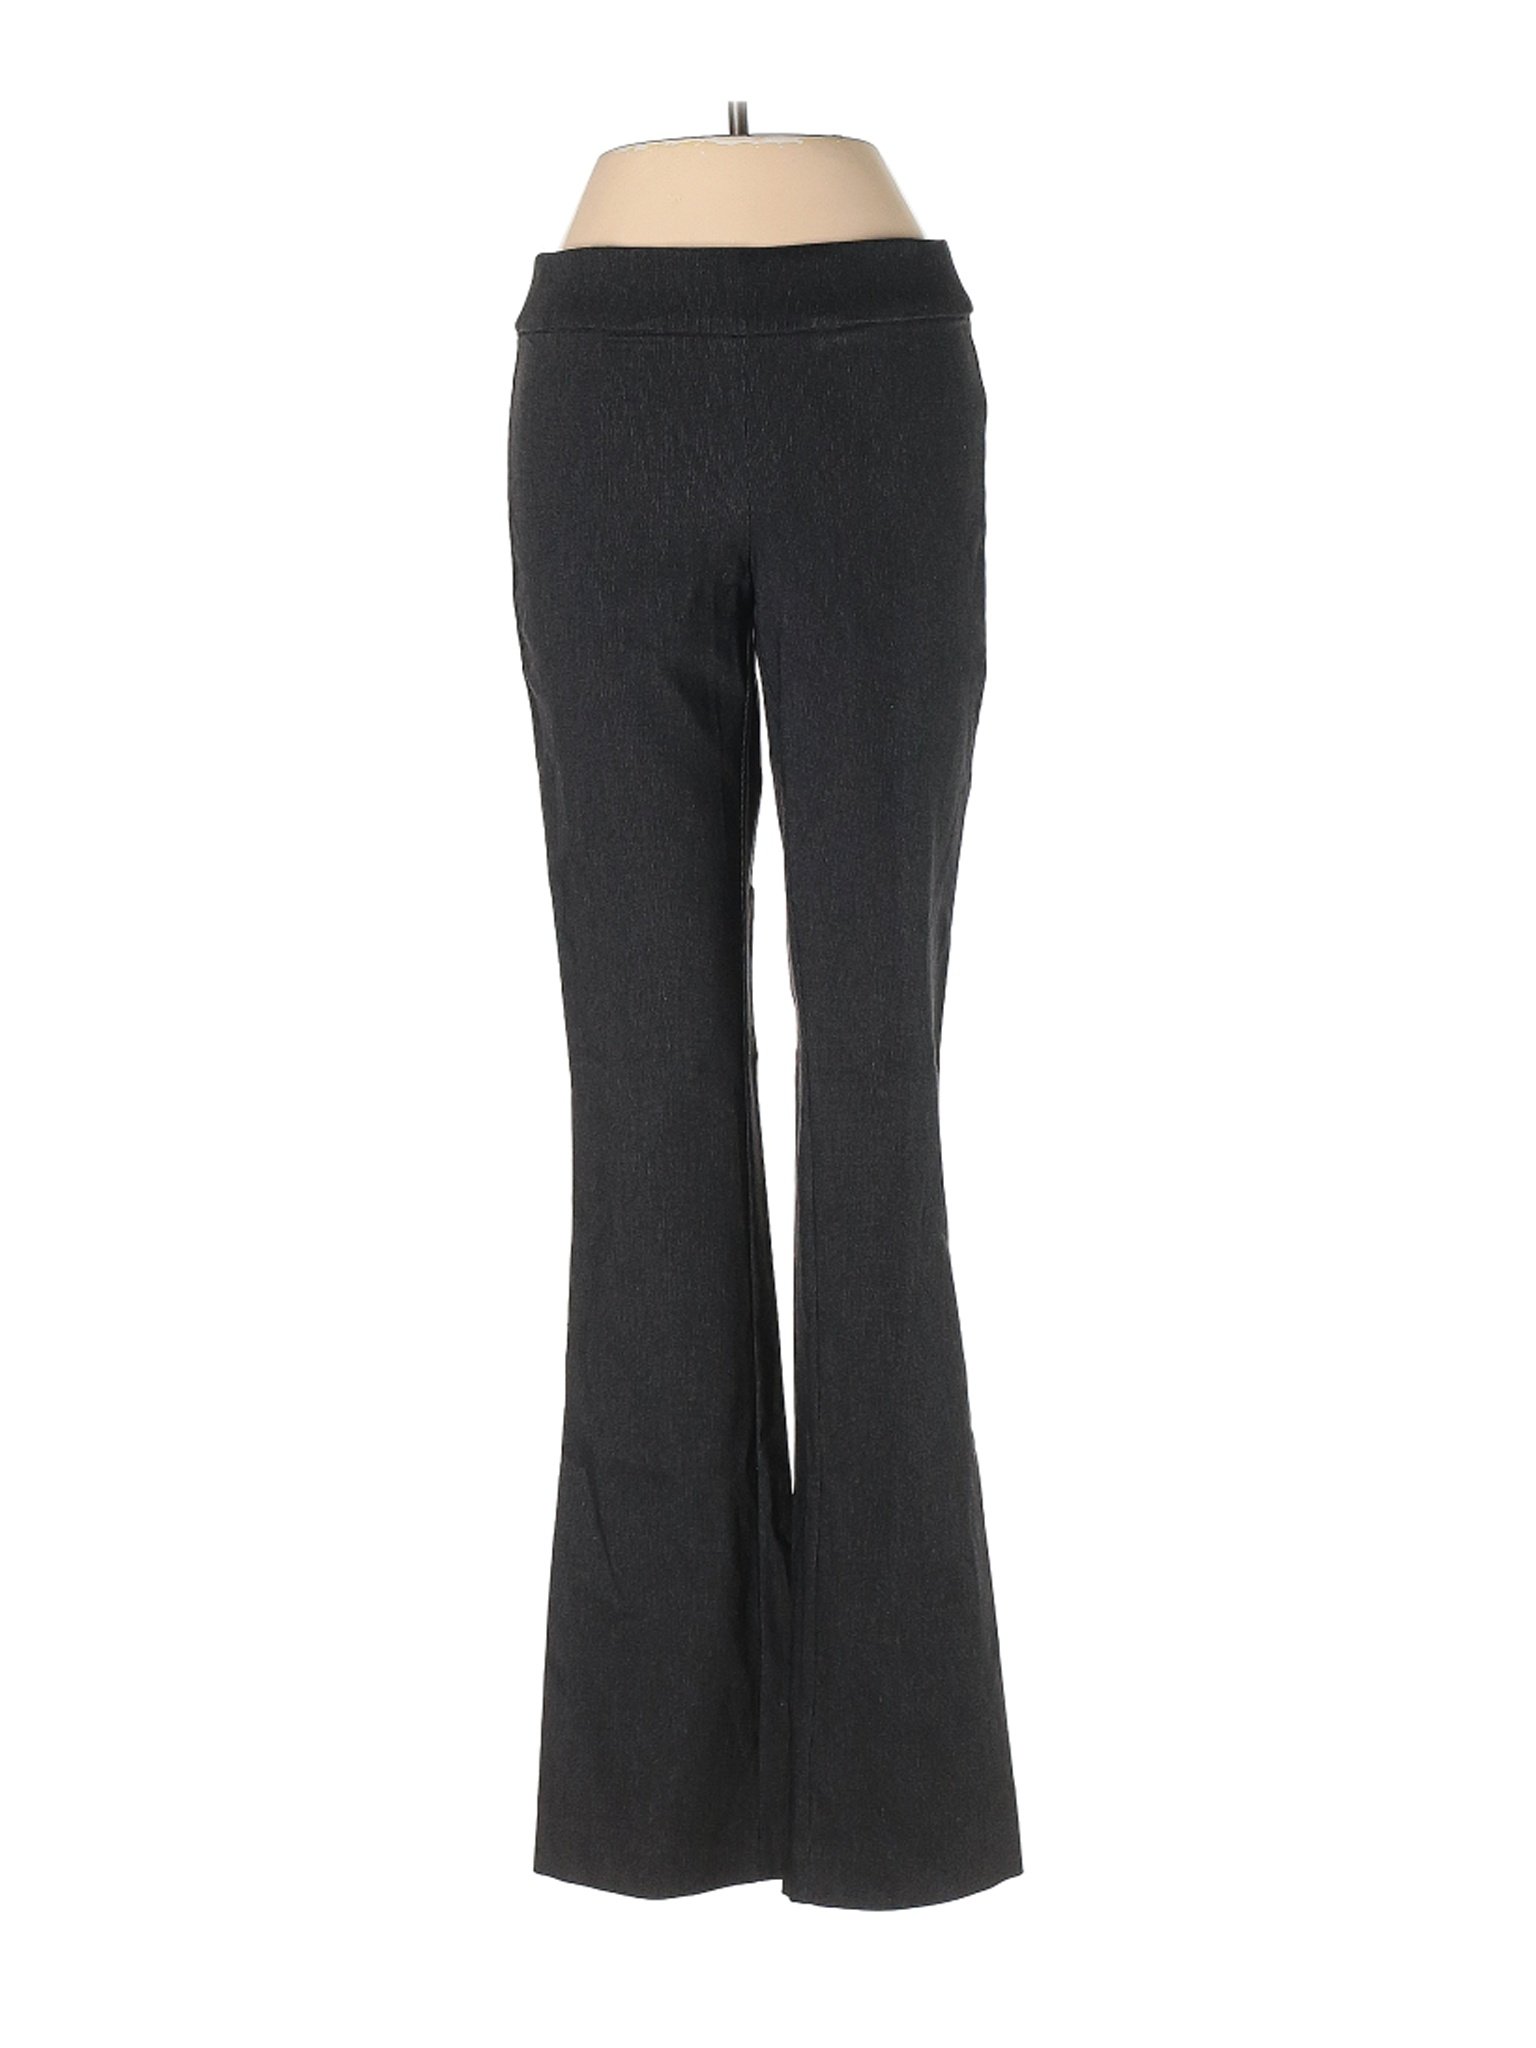 Simply Vera Vera Wang Women Black Dress Pants XS | eBay